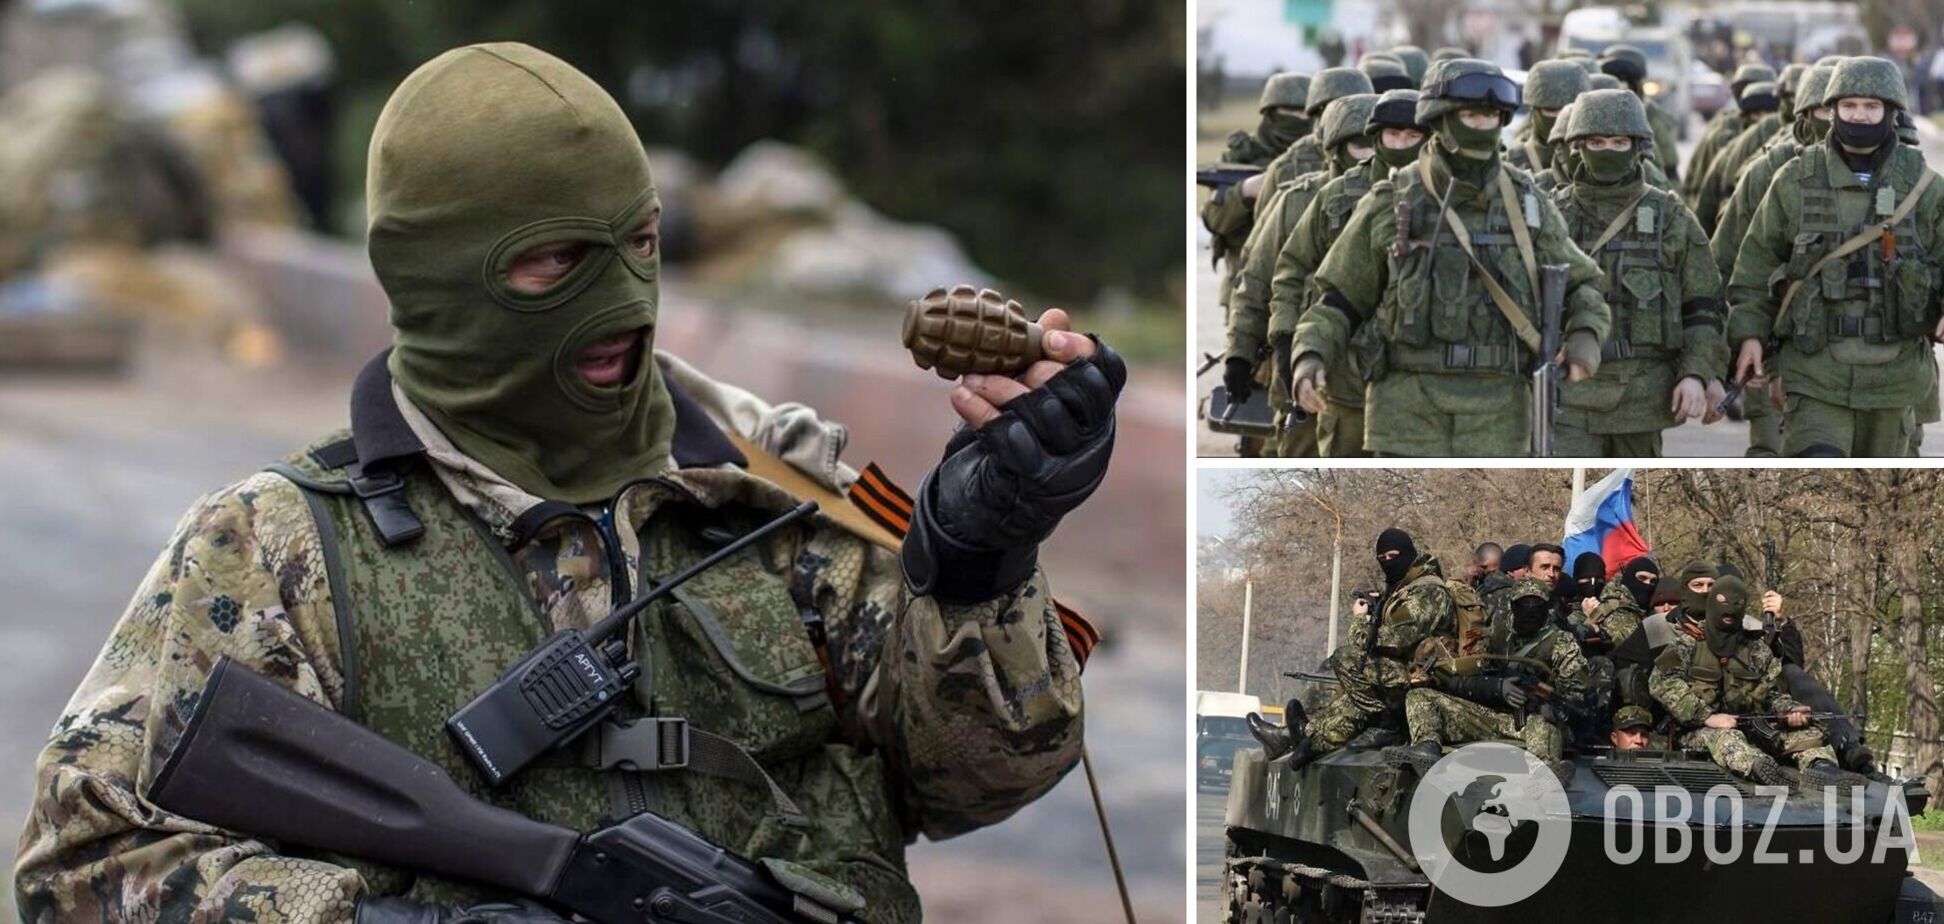 'Нам дали команду ху*рить, всех подряд!' Российский оккупант рассказал, что им разрешили убивать детей в Украине